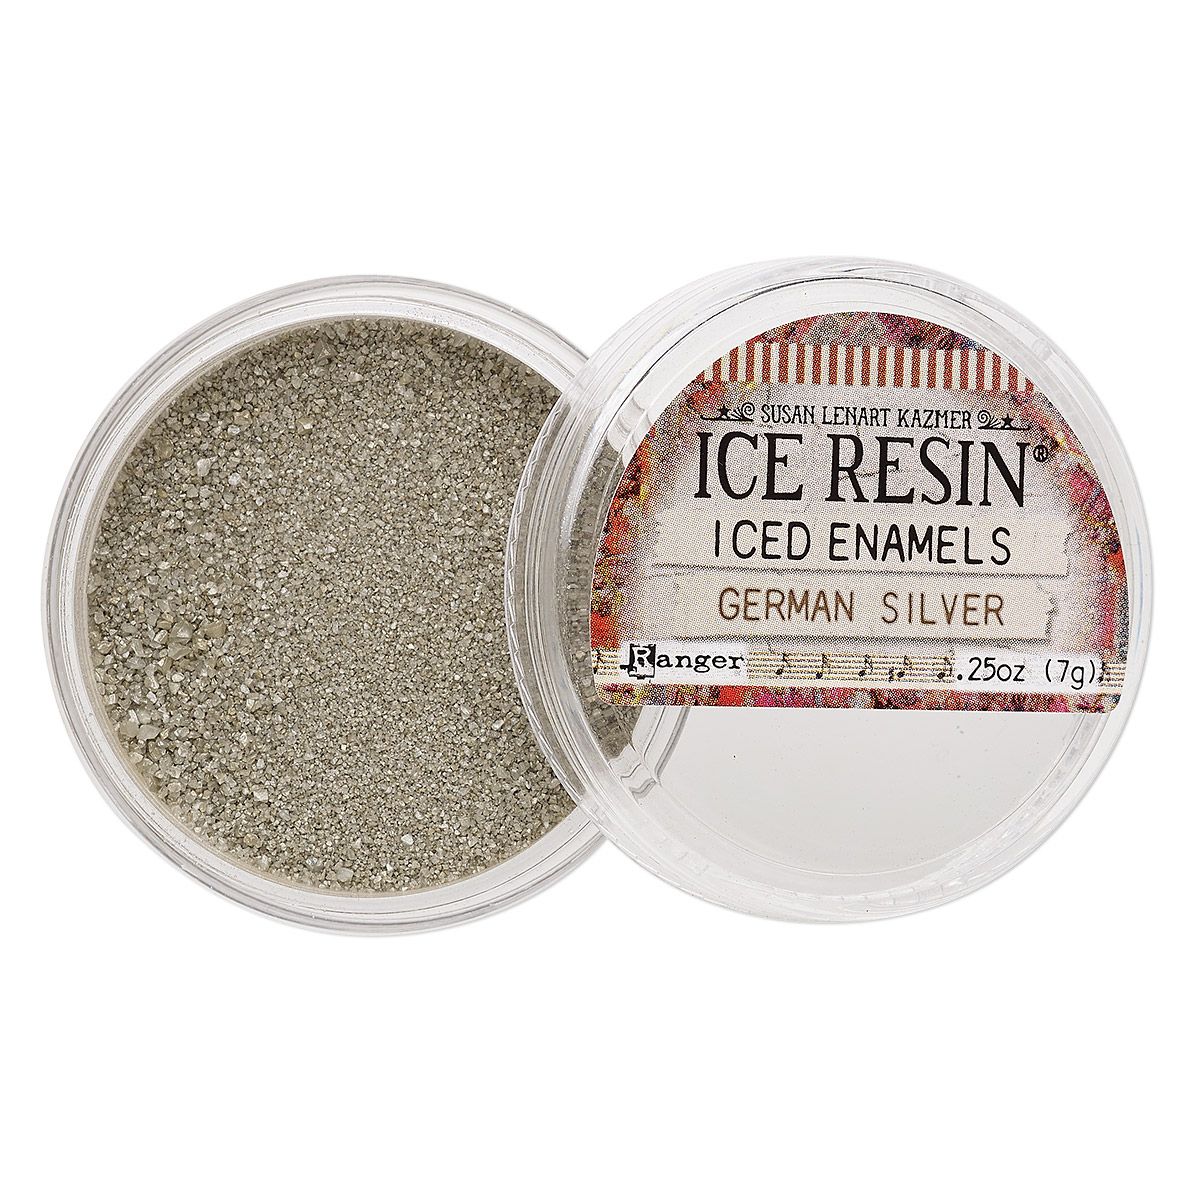 ICE Resin, Iced Enamels German Silver